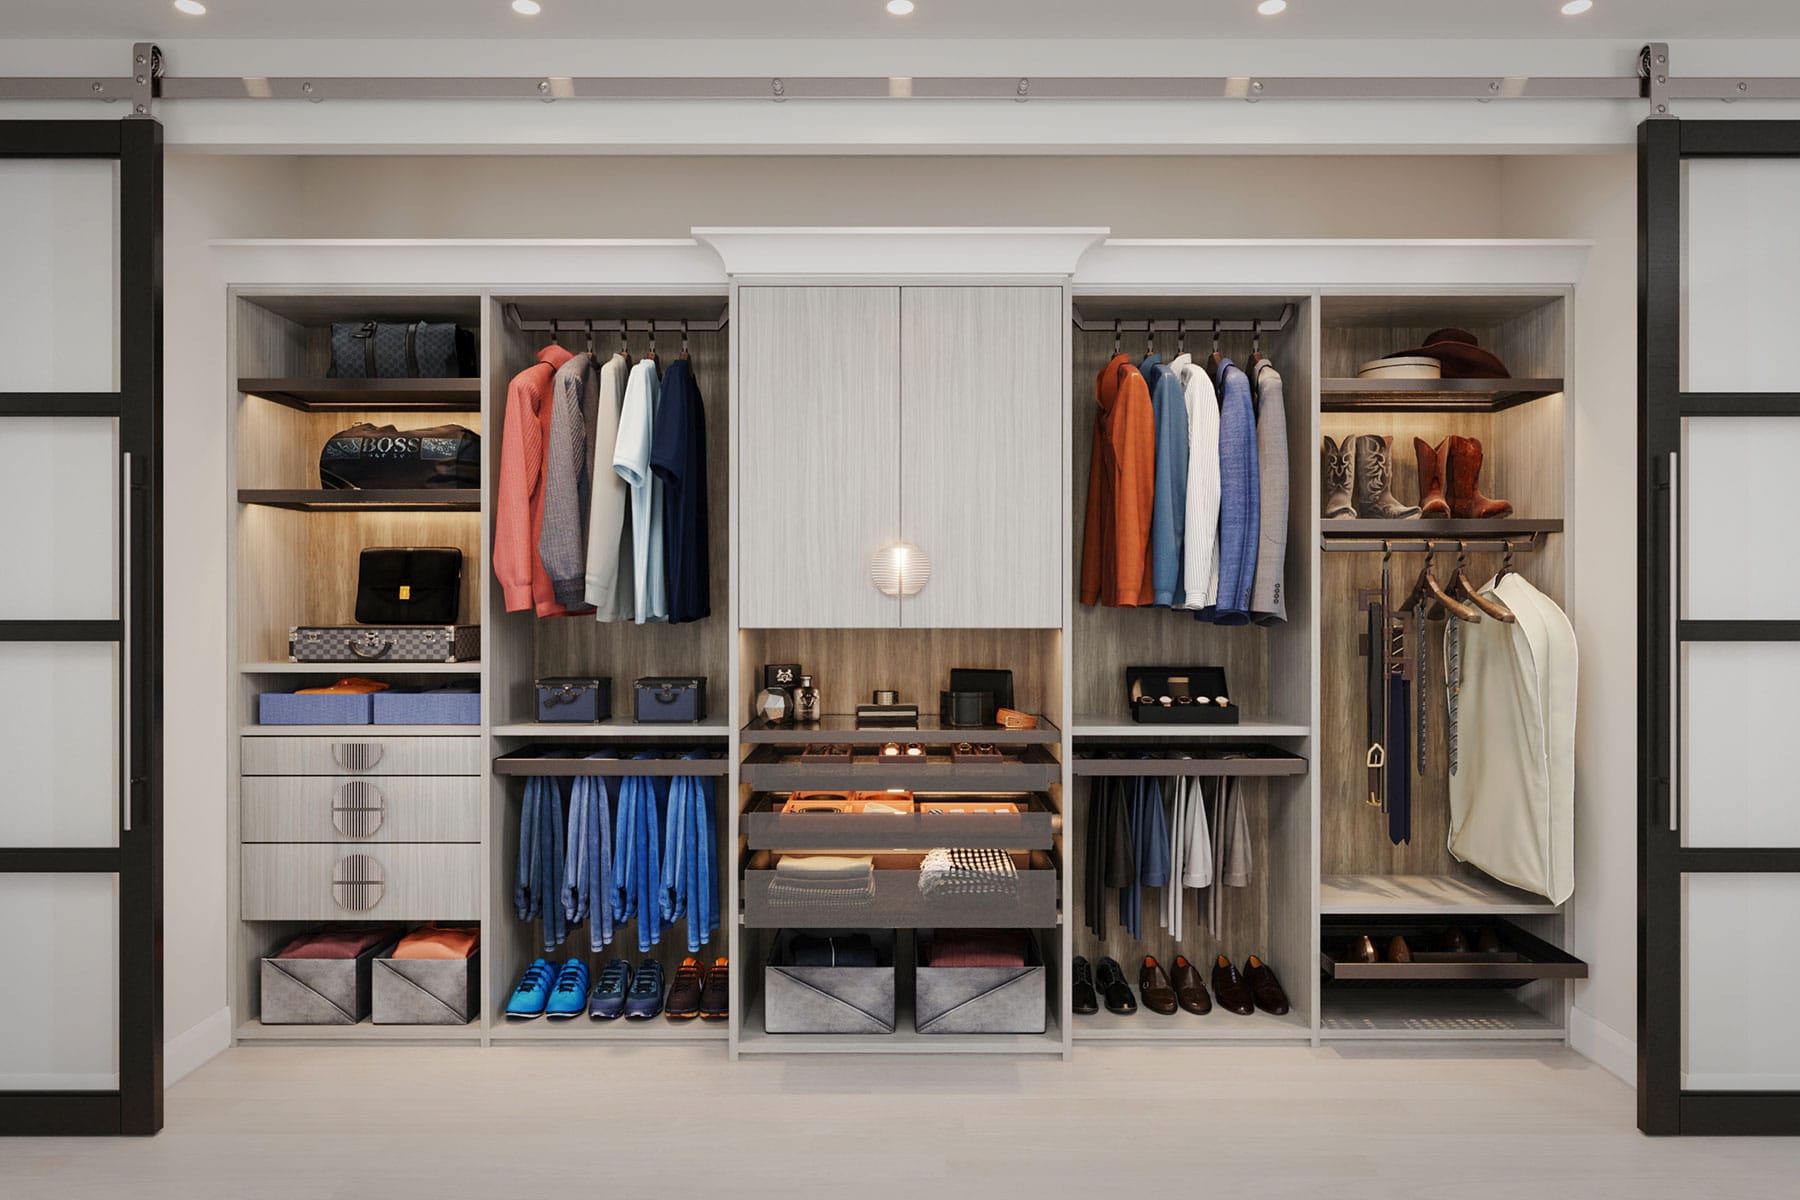 Designing Your Dream Closet on a Budget - Melamine Closet